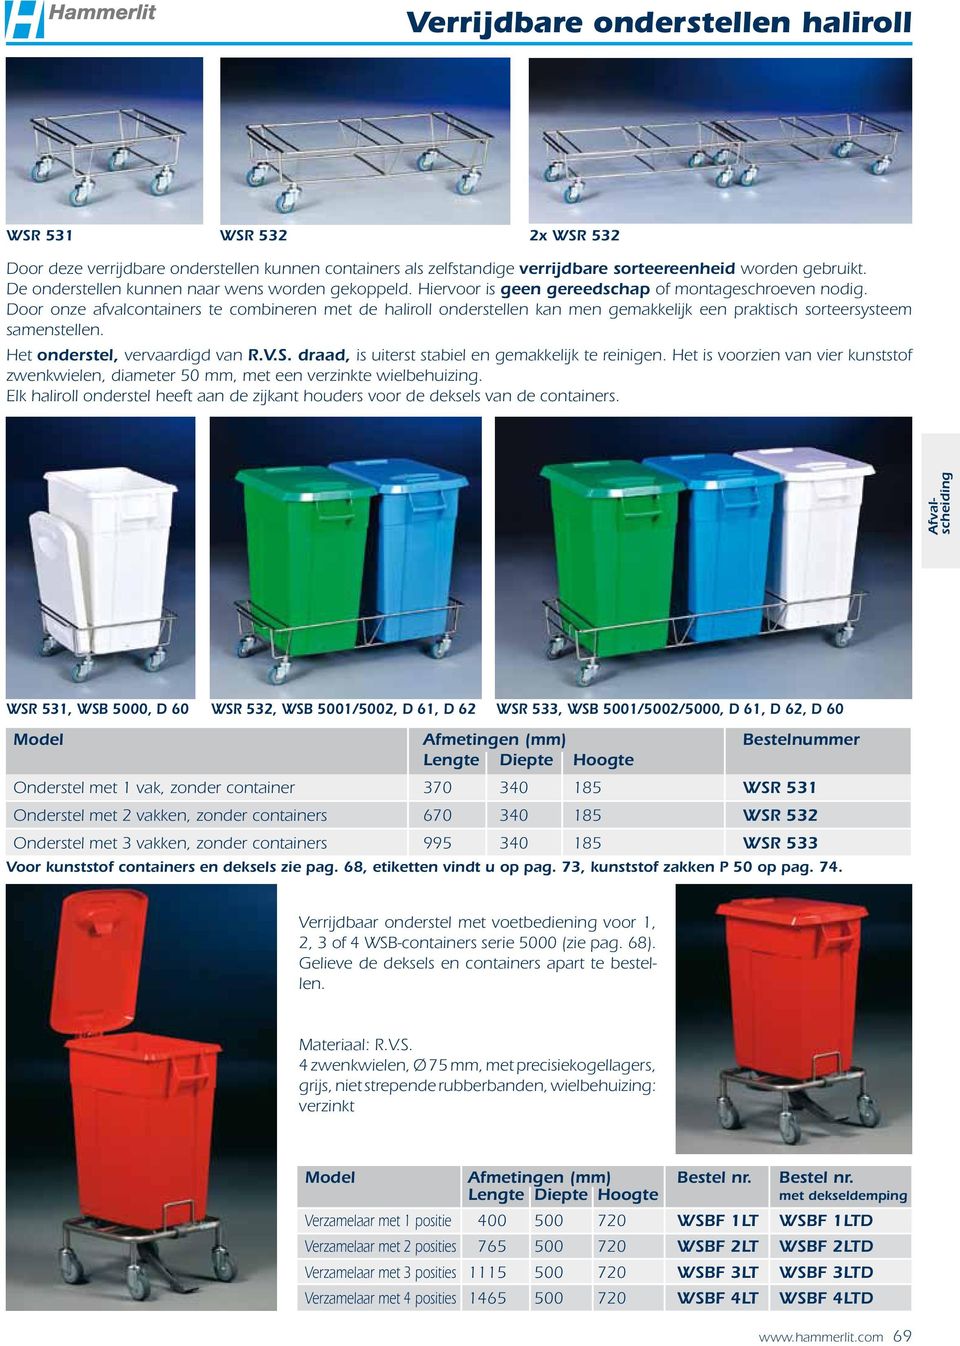 Door onze afvalcontainers te combineren met de haliroll onderstellen kan men gemakkelijk een praktisch sorteersysteem samenstellen. Het onderstel, vervaardigd van R.V.S.